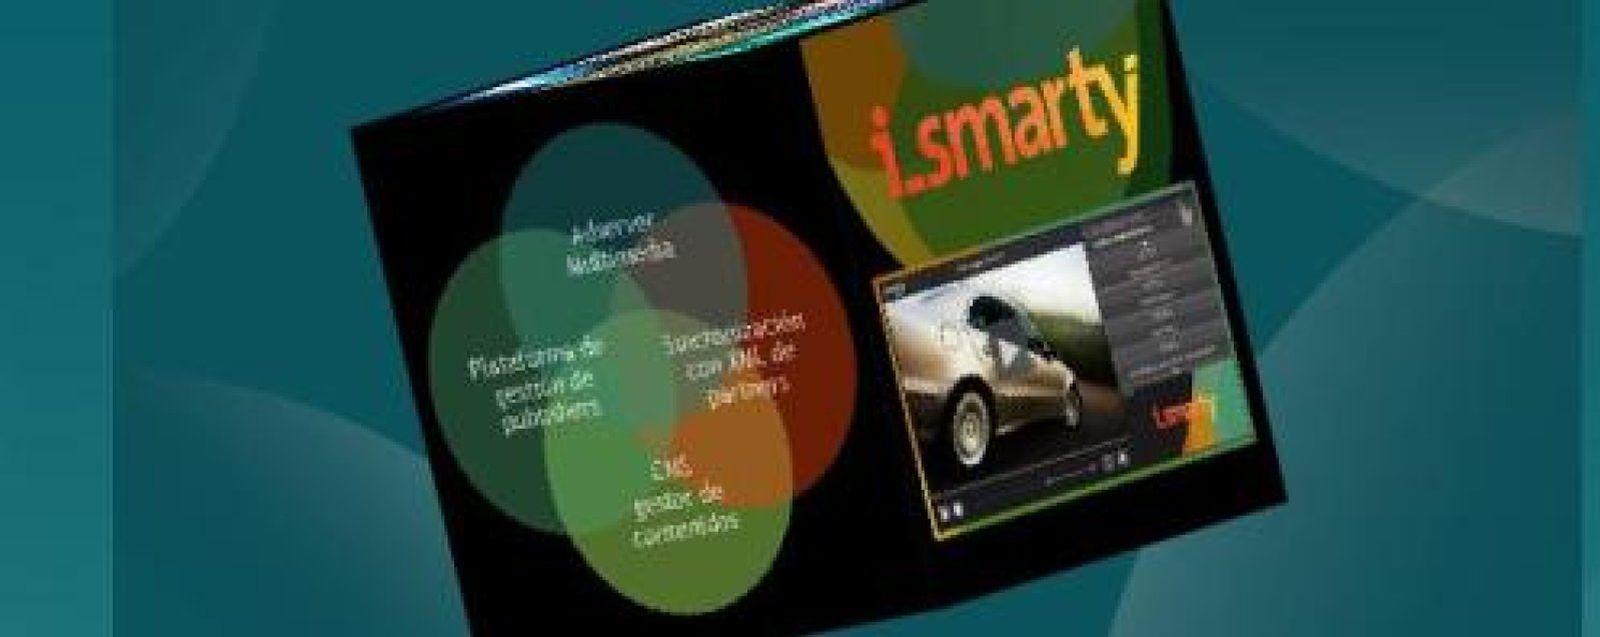 Foto: Smartycontent, un nuevo agregador multimedia para el mundo de la televisión conectada